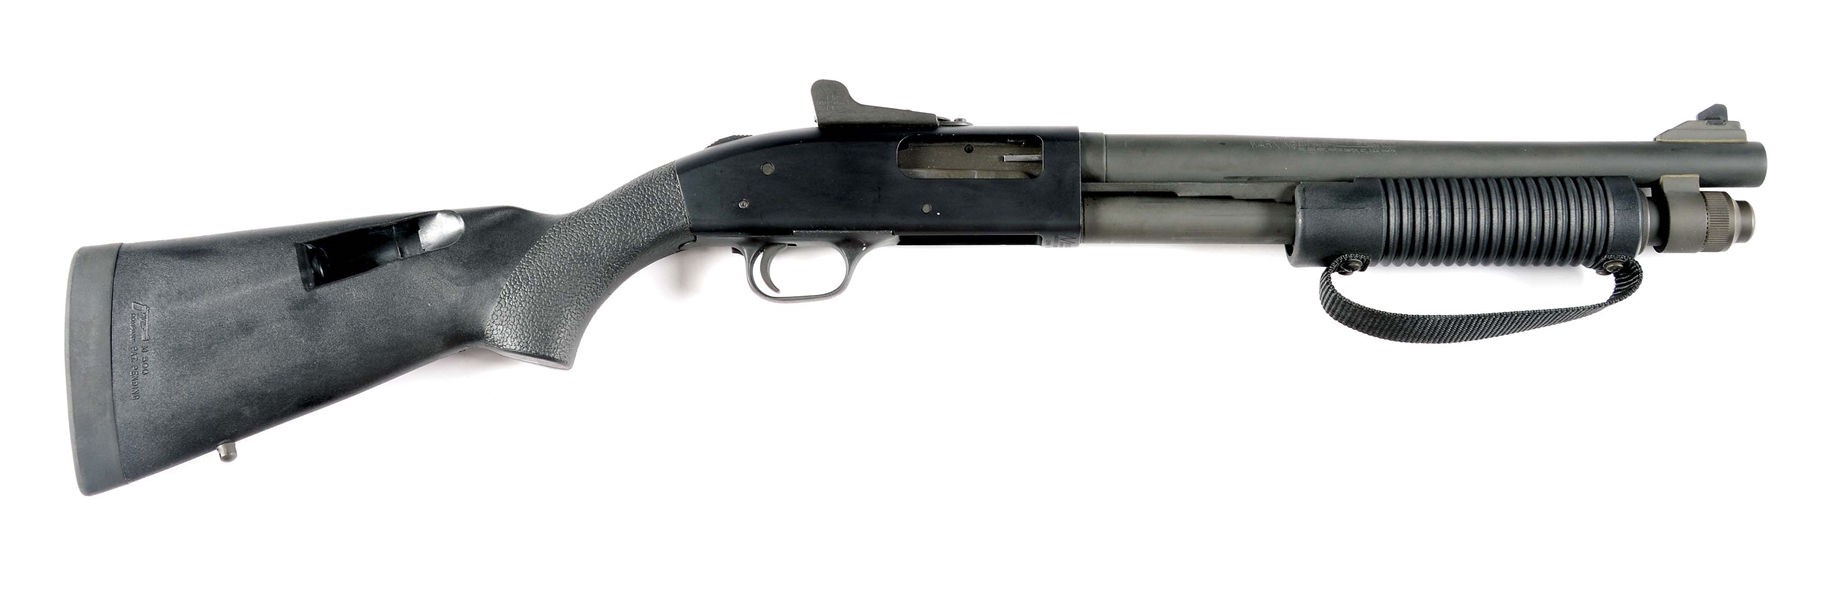 (N) MOSSBERG MODEL 590A1 SHORT BARREL SHOTGUN WITH BOX (SHORT BARREL SHOTGUN).